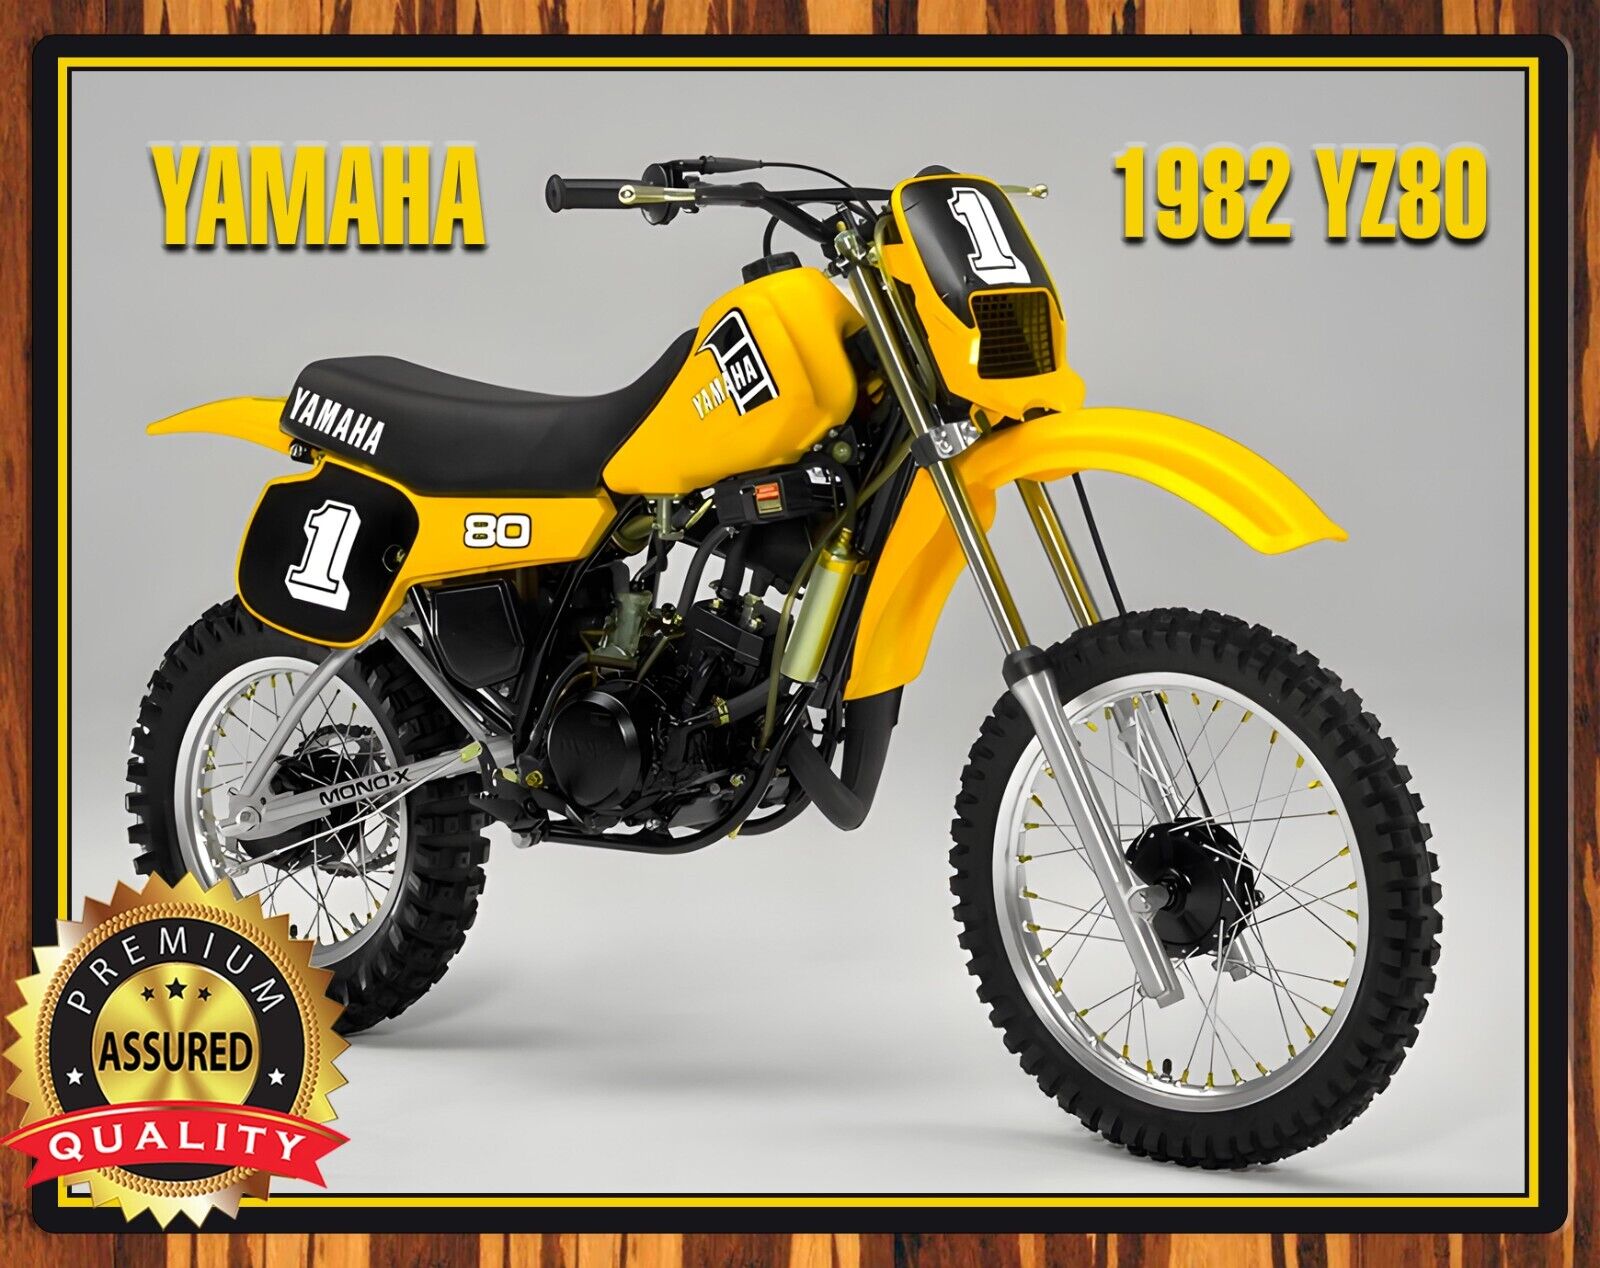 1982 Yamaha - YZ80 - Motocross - Metal Sign 11 x 14